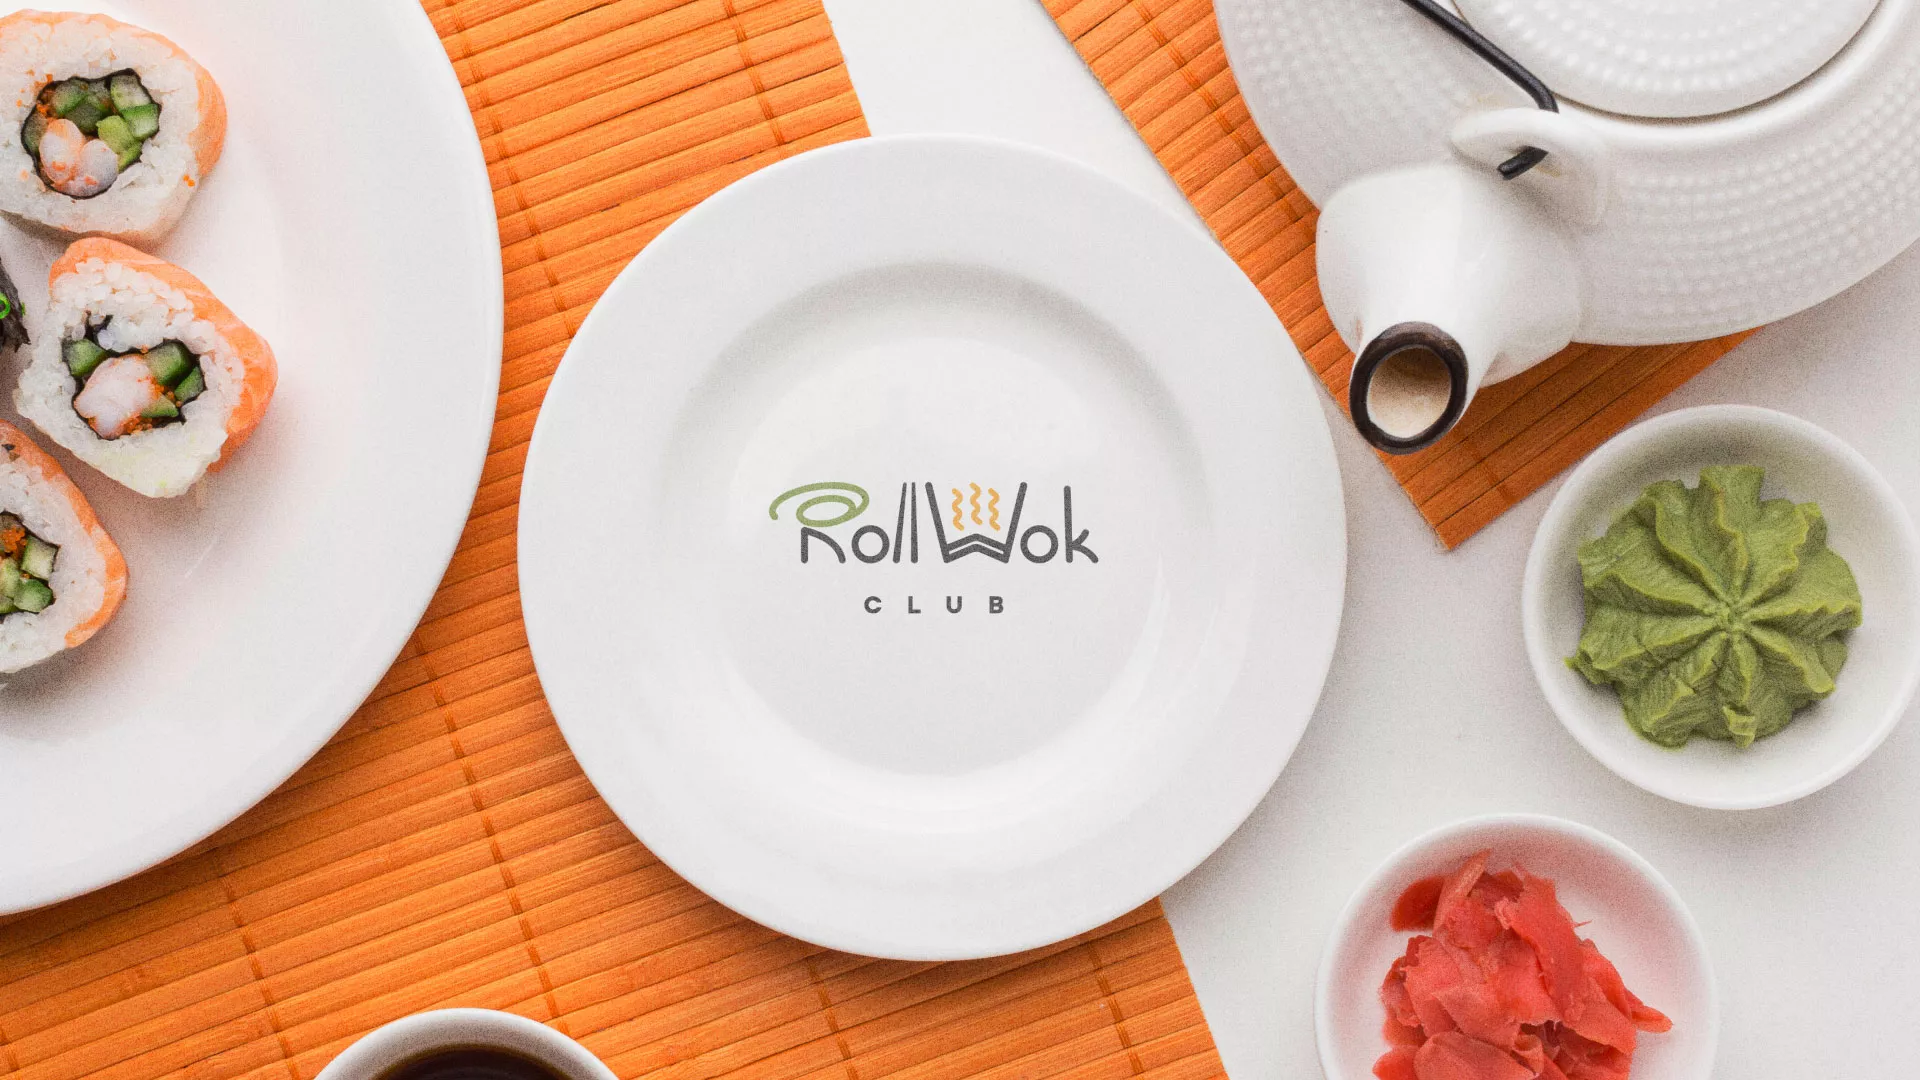 Разработка логотипа и фирменного стиля суши-бара «Roll Wok Club» в Новомосковске